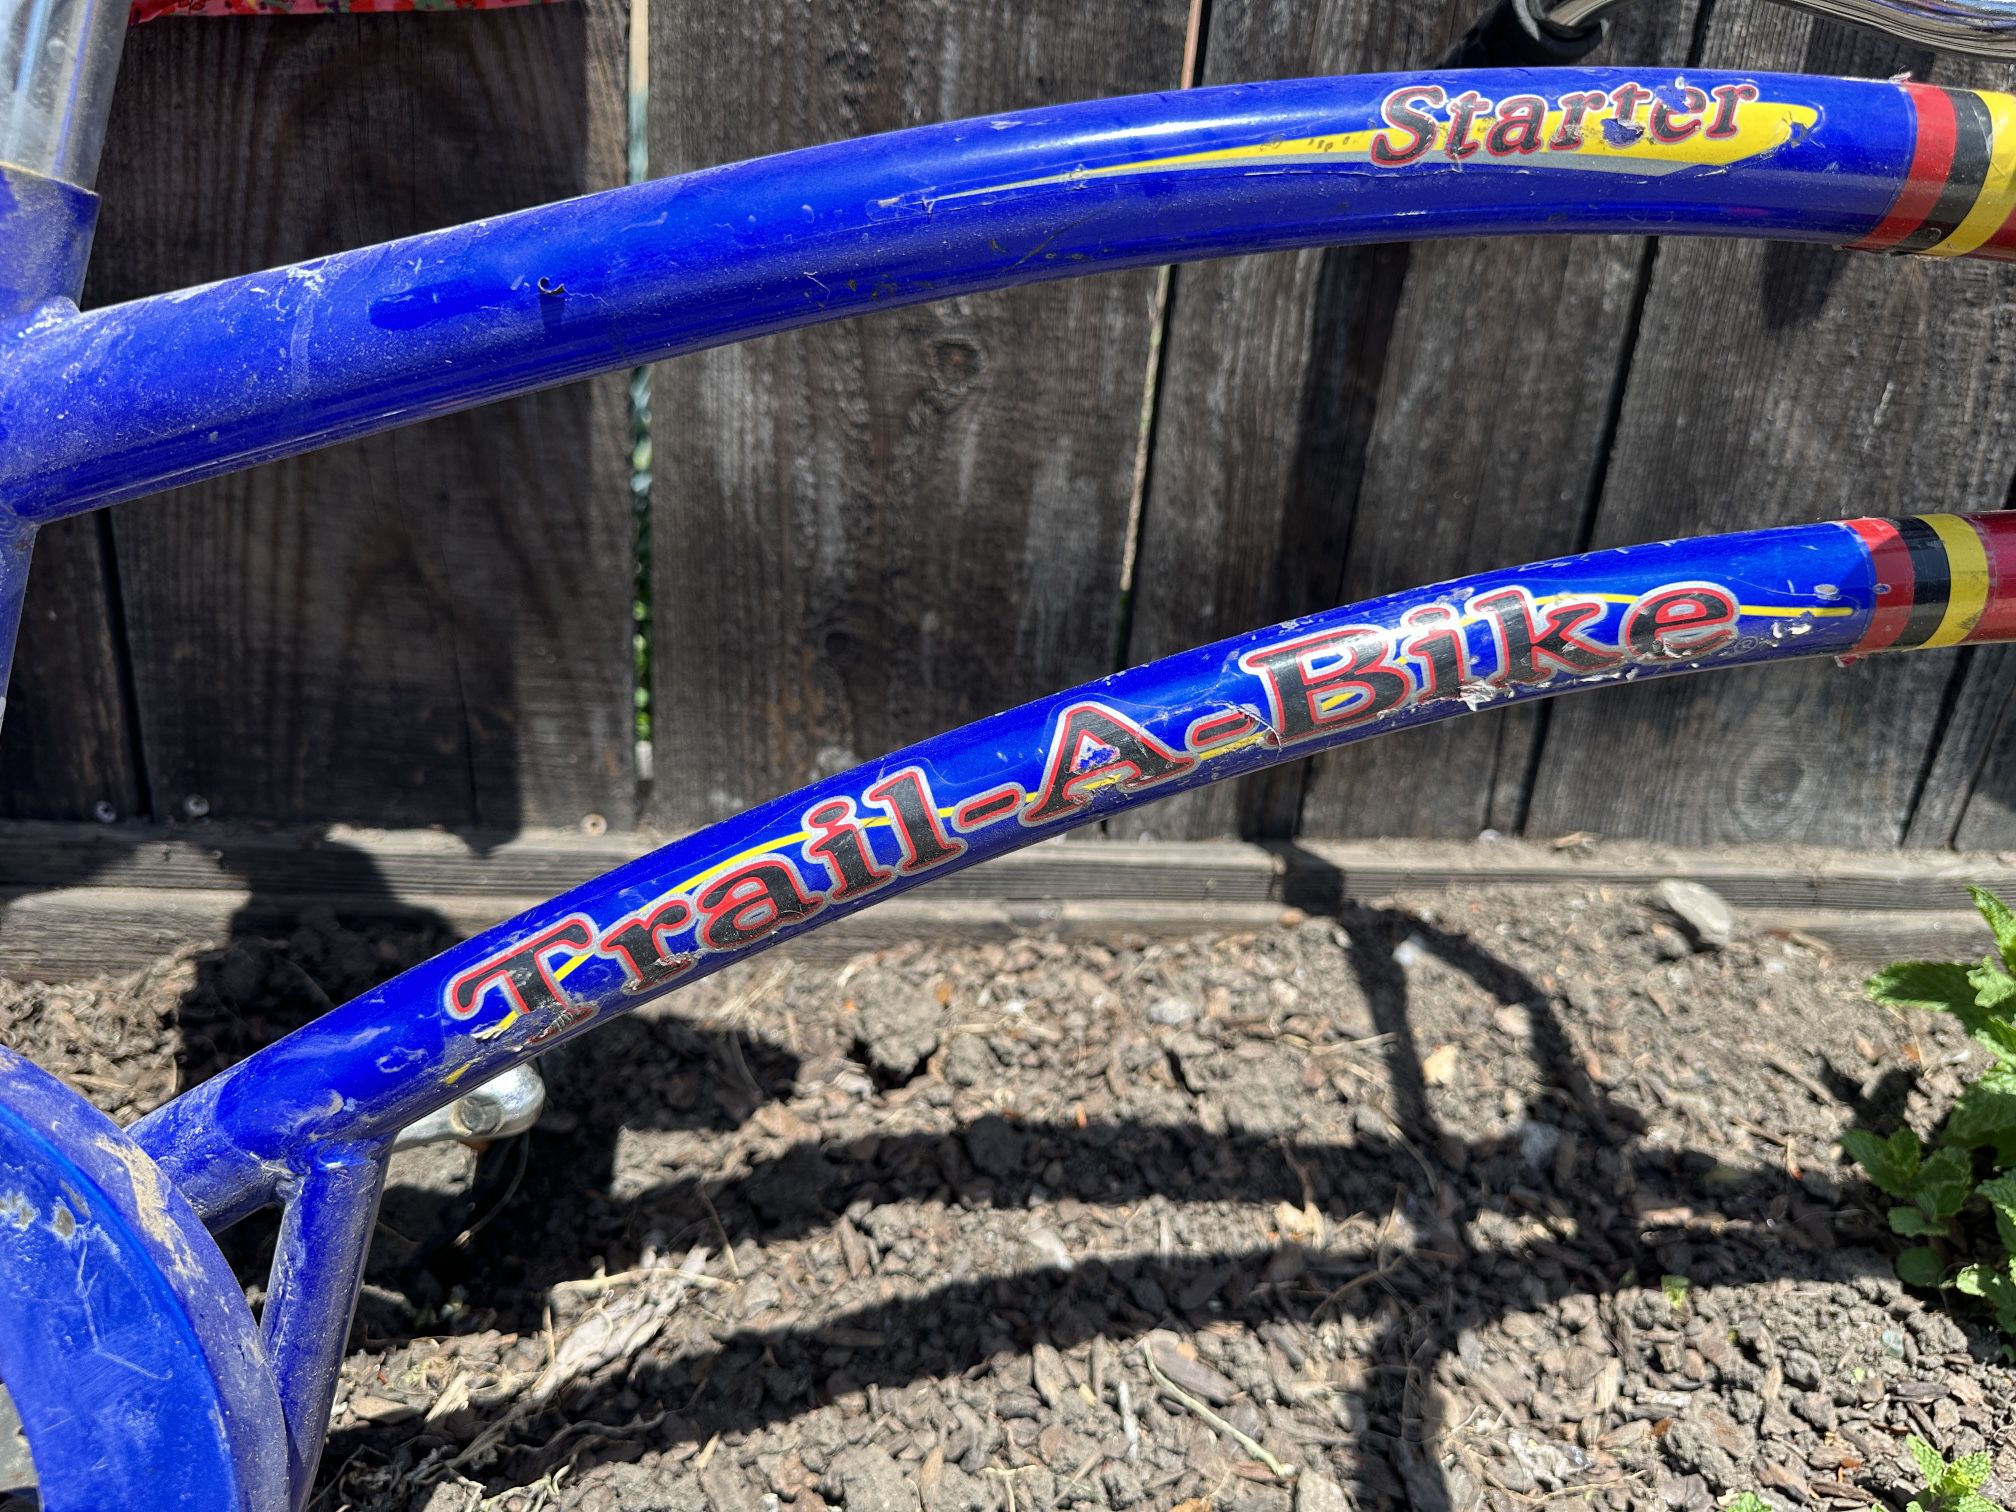 Adams Trail-a-bike